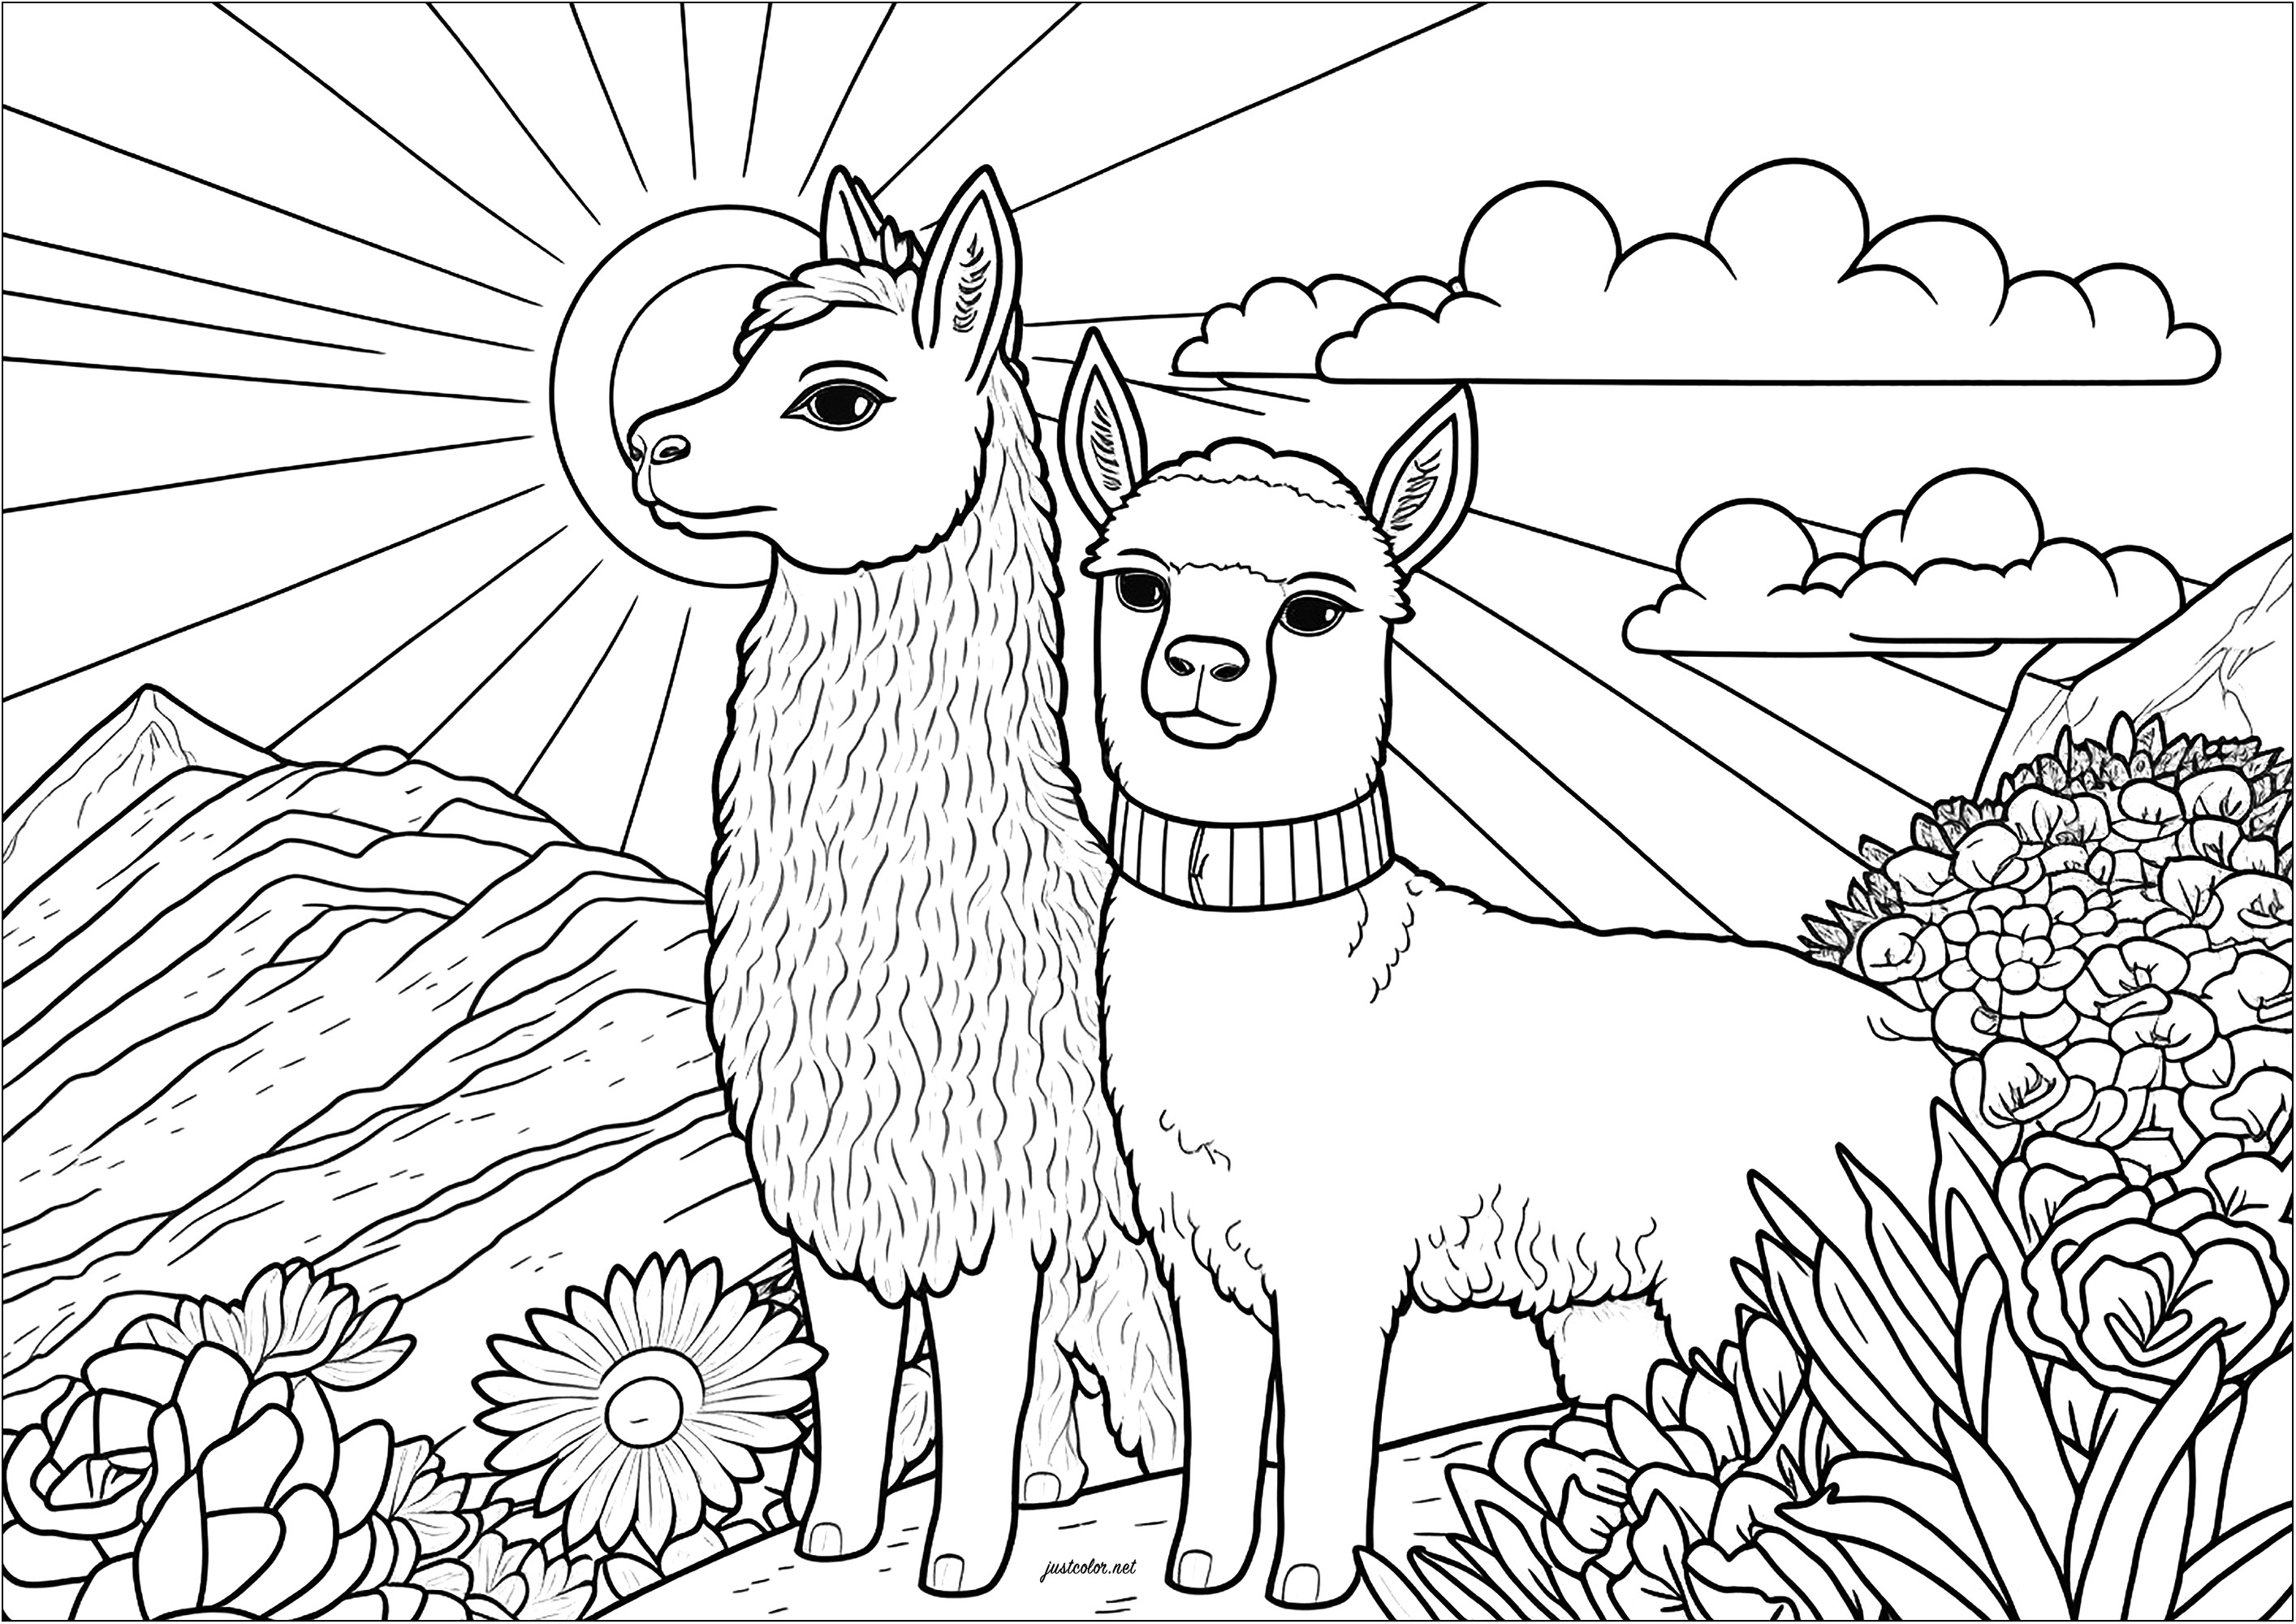 Coloriage de deux lamas sérieux. Dans ce coloriage, on voit deux lamas sérieux, debout côte à côte. Ils semblent se tenir droit, attentifs et calmes. On peut imaginer qu'ils sont en train de regarder le paysage autour d'eux, et qu'ils se sentent bien à l'aise dans leur environnement.